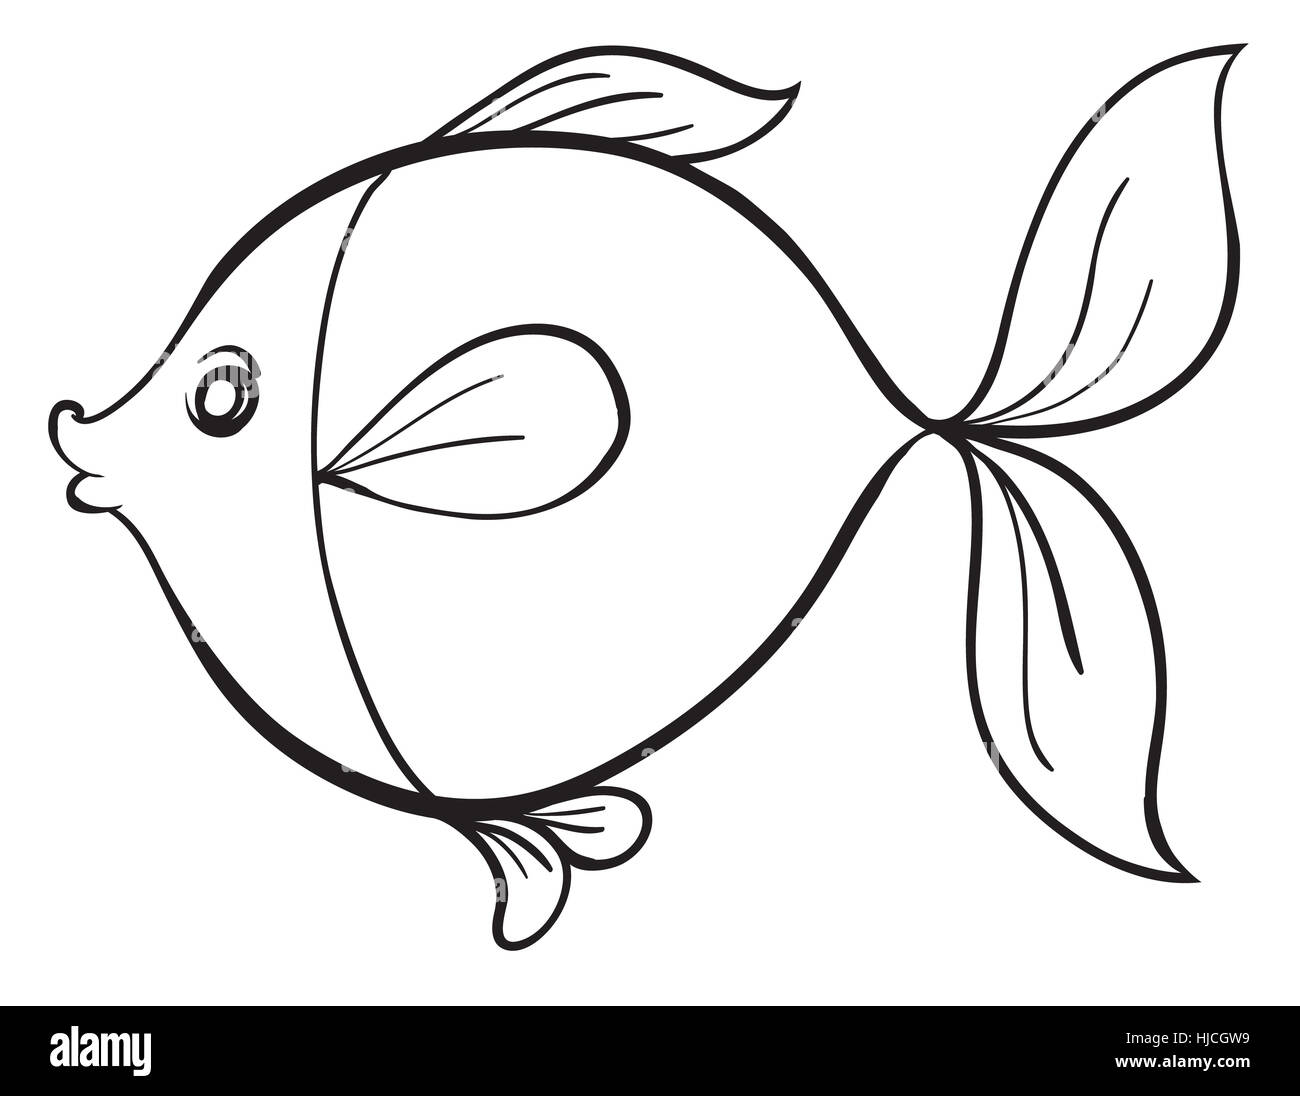 https://c8.alamy.com/comp/HJCGW9/detailed-illustration-of-a-fish-line-art-on-white-HJCGW9.jpg